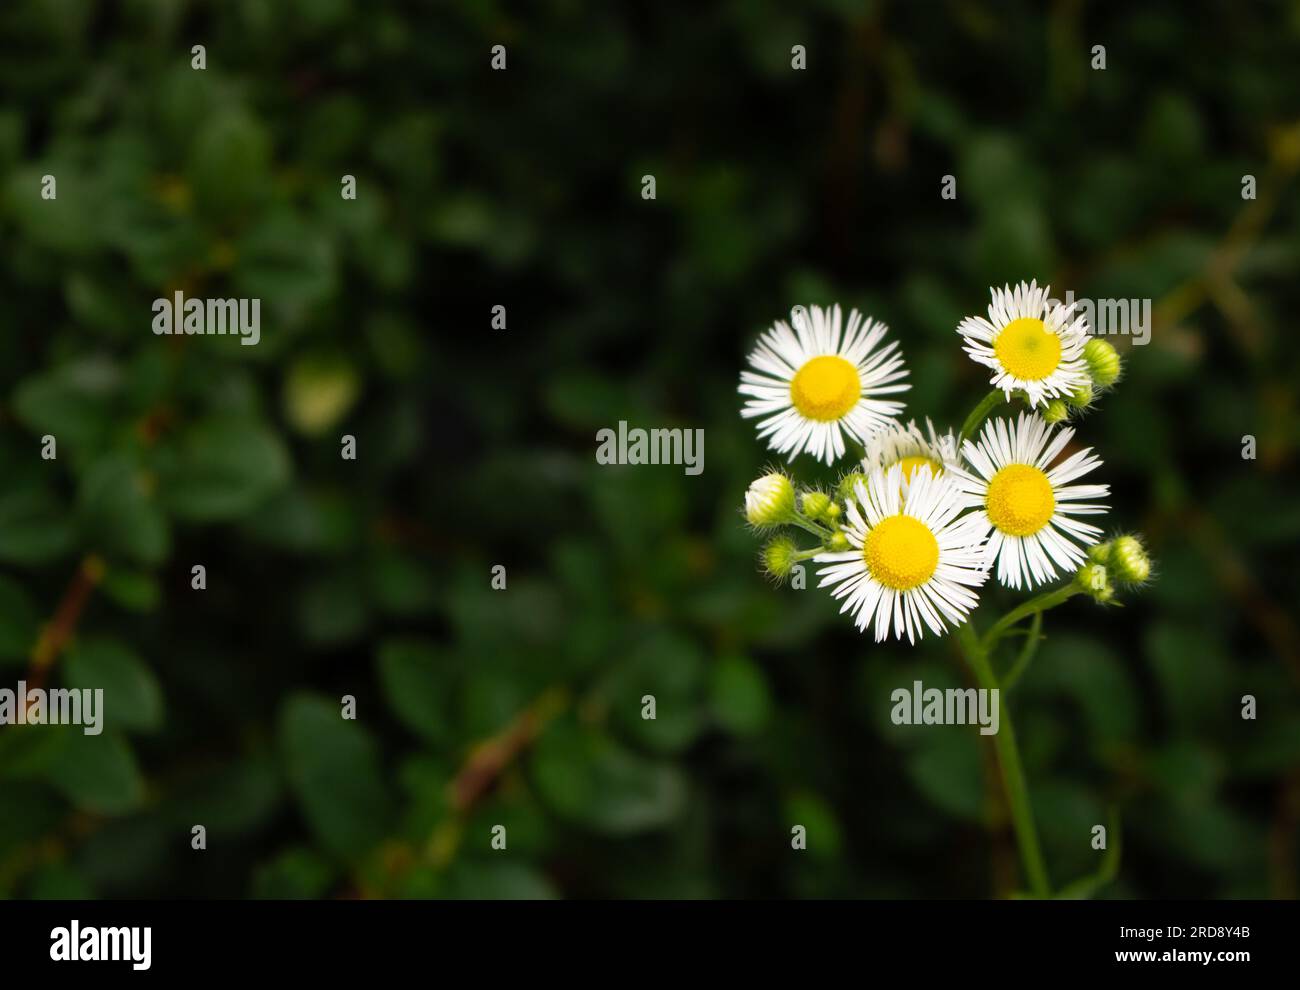 Gänseblümchen im Gras. Kleine Kamille auf tiefgrünem Hintergrund. Sommer Natur im Detail. Weiße Blumen auf der Wiese. Idyllischer Gartenhintergrund. Stockfoto